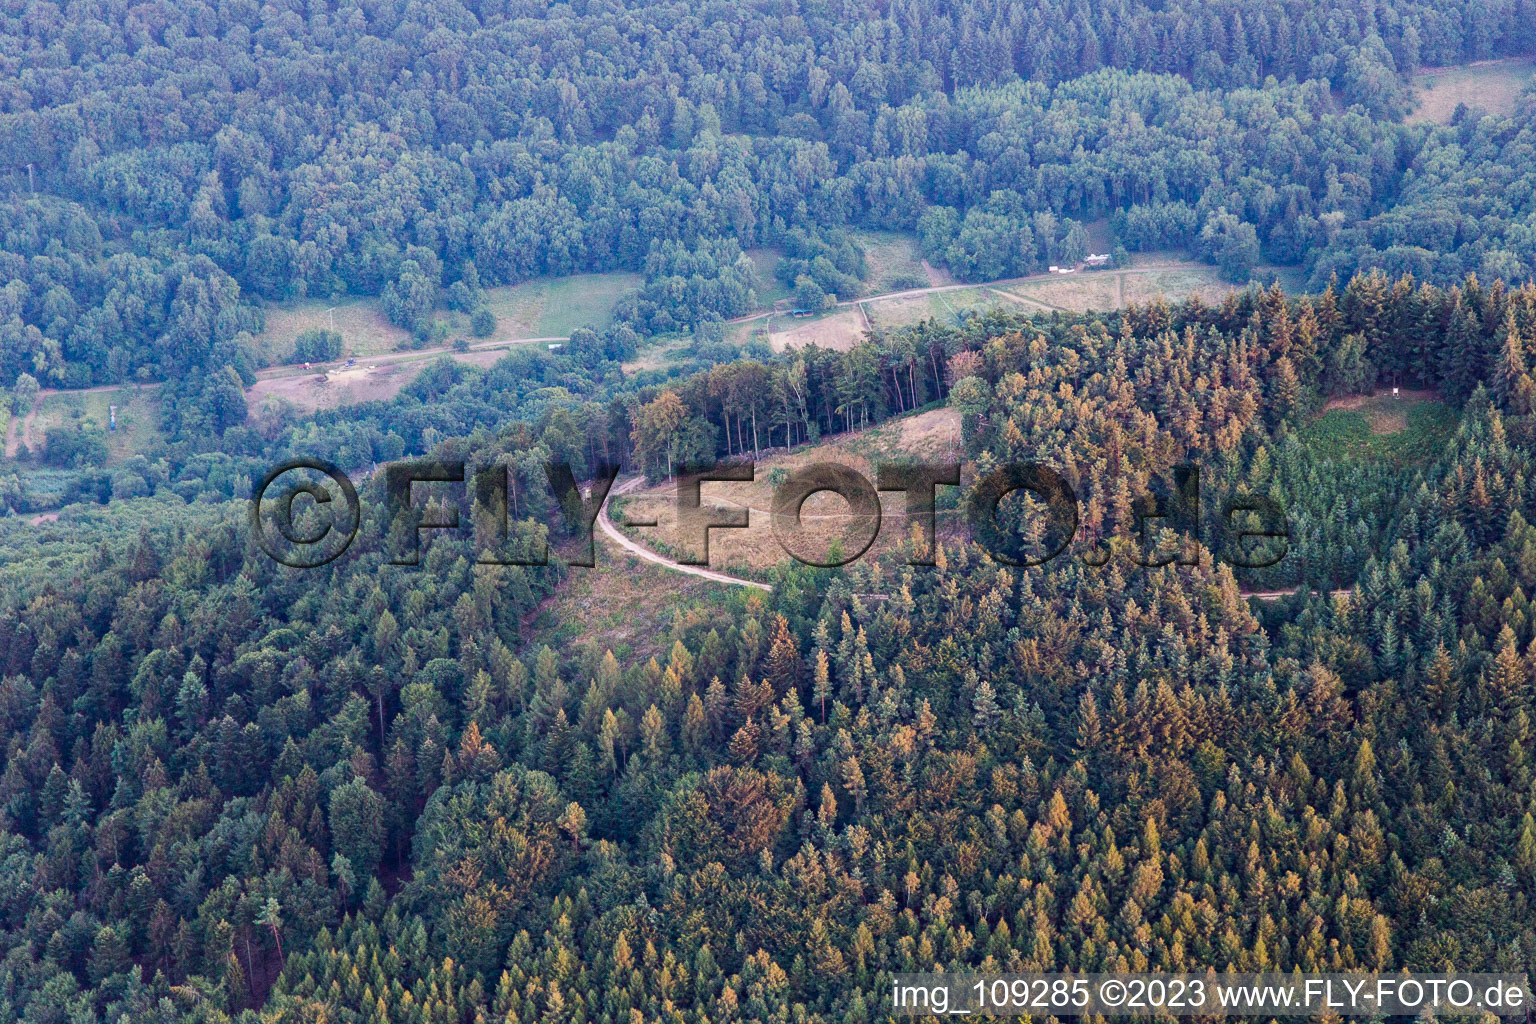 Vue aérienne de Site de décollage des parapentes de Förlenberg à Ranschbach dans le département Rhénanie-Palatinat, Allemagne